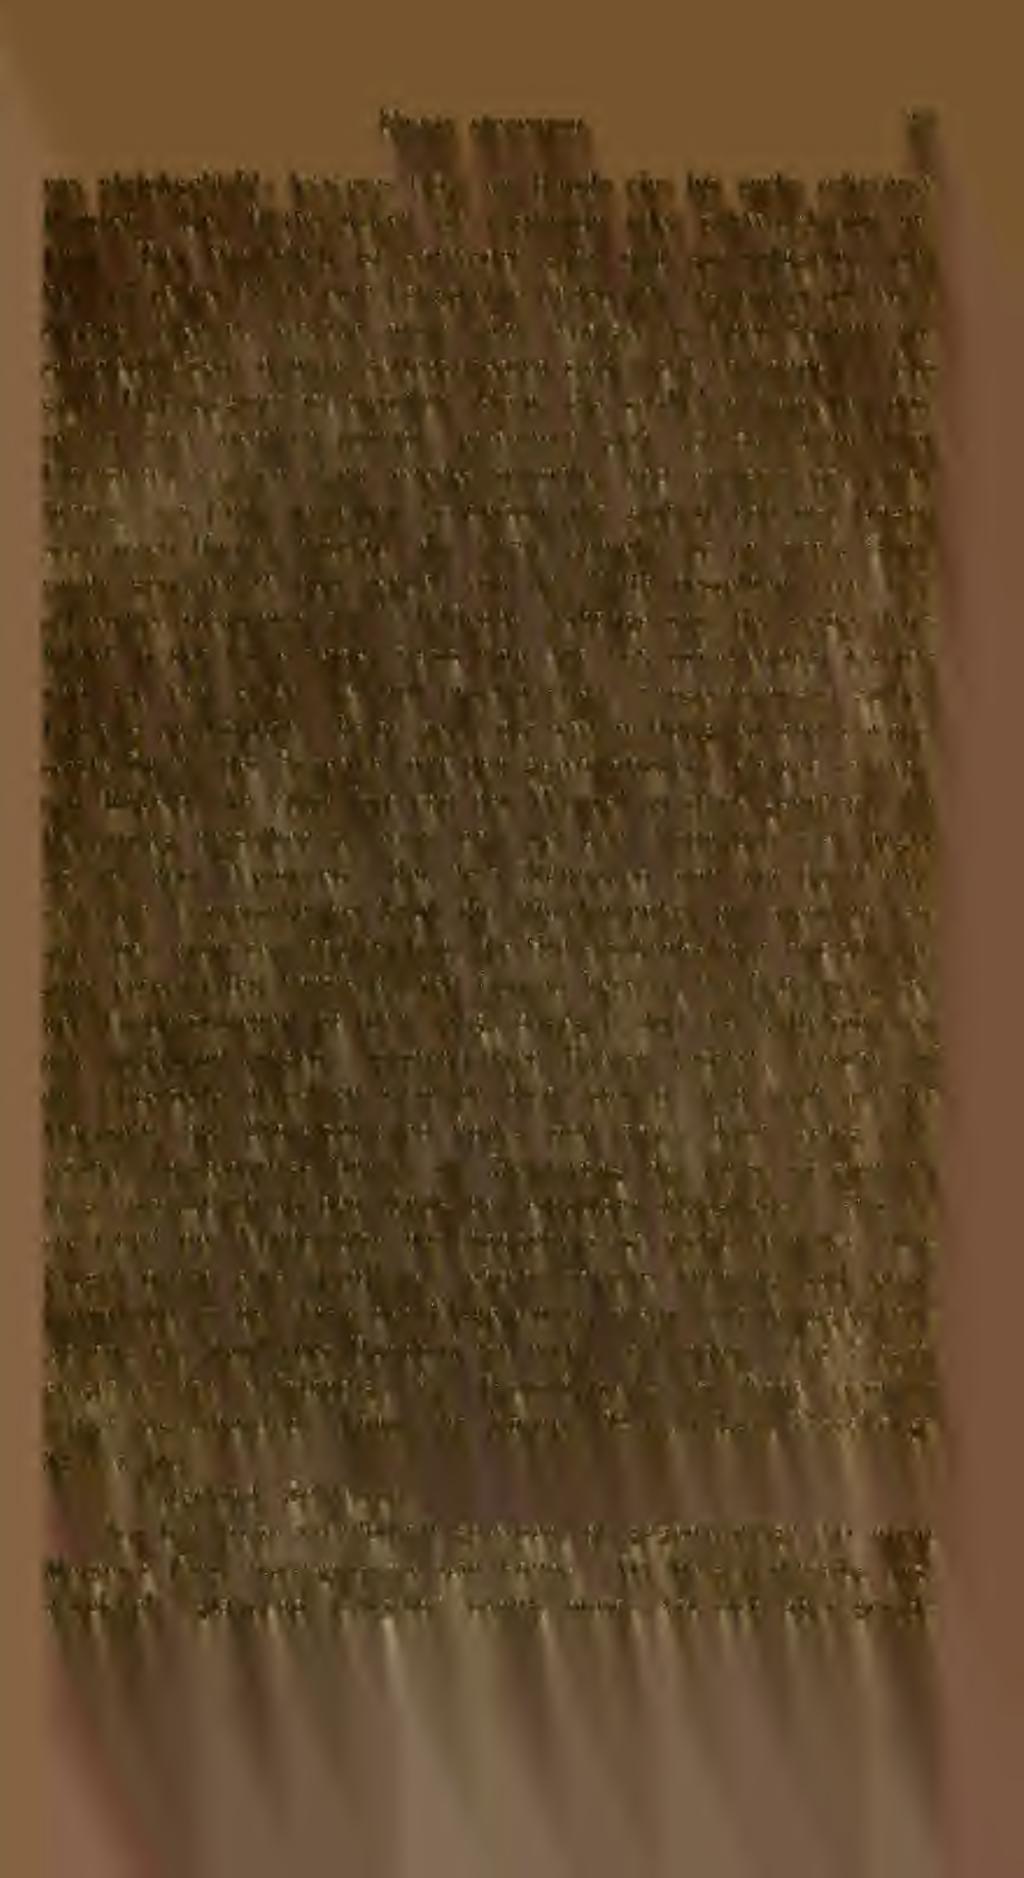 Empis slercorea. 23 rax gleicbgefärbt ; letzleres trägt am Rande vier bis secbs schwarze Borsten. Der Hinterrücken ist rostbraun oder schwarzbraun gefärbt.